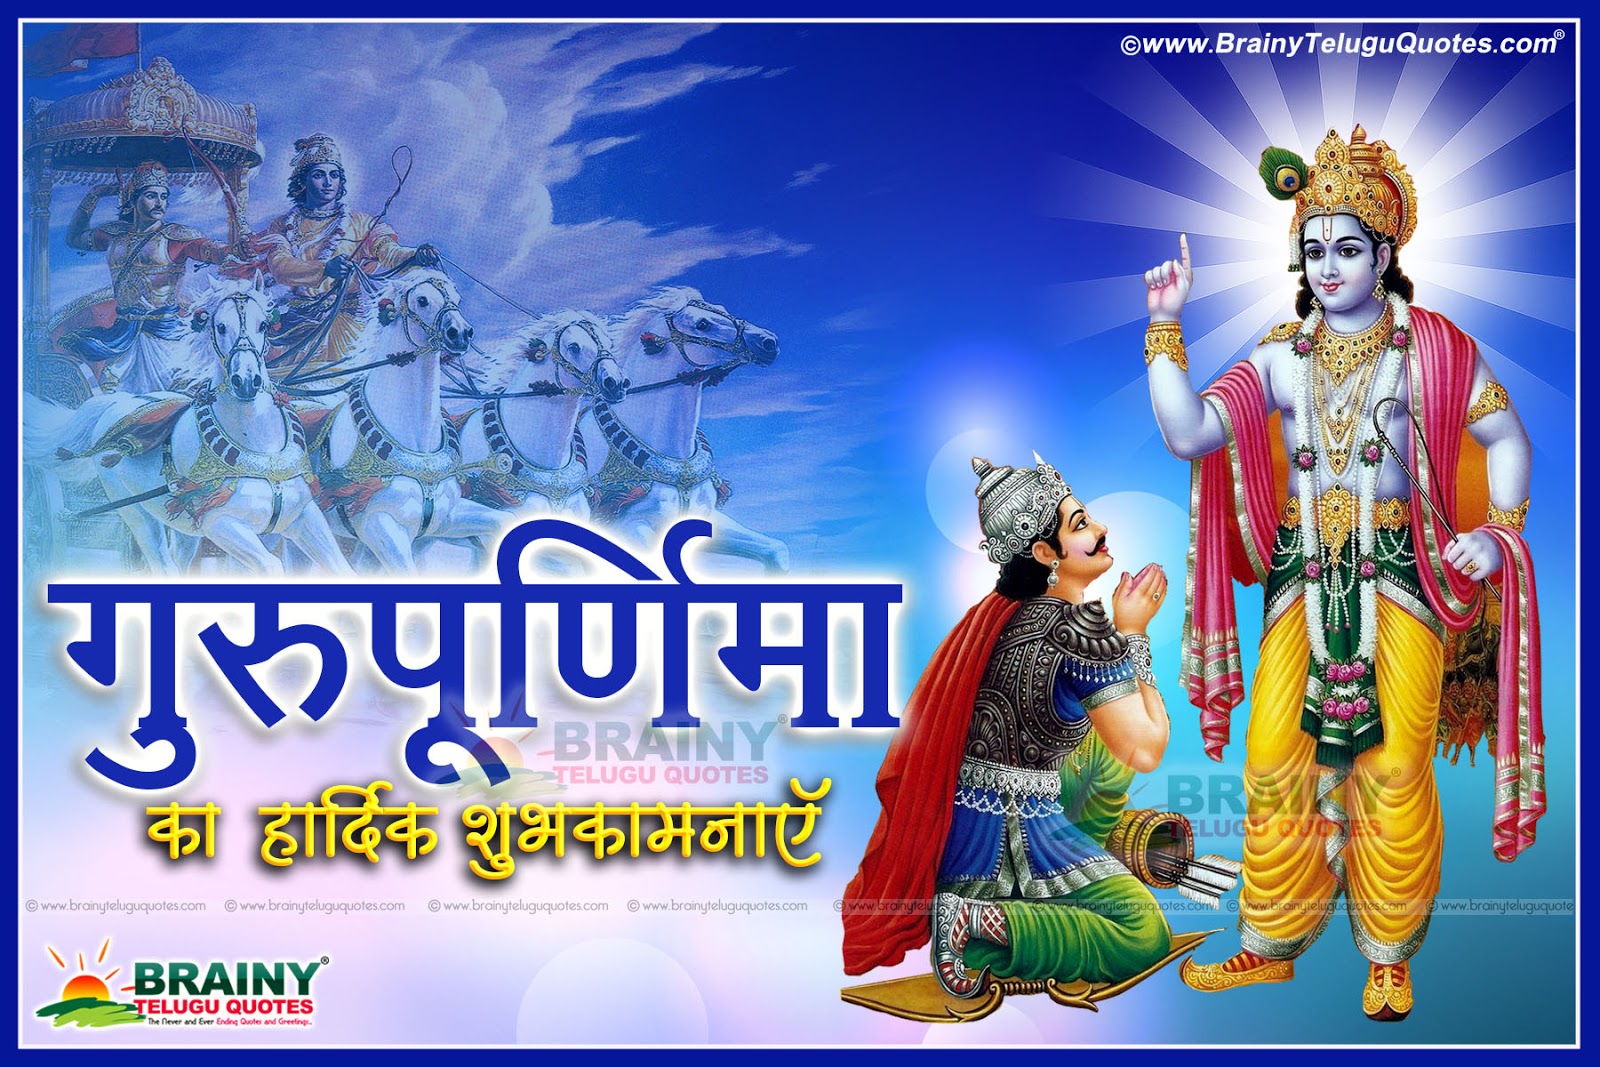 Guru Purnima Latest wishes in Hindi Shayari and Images